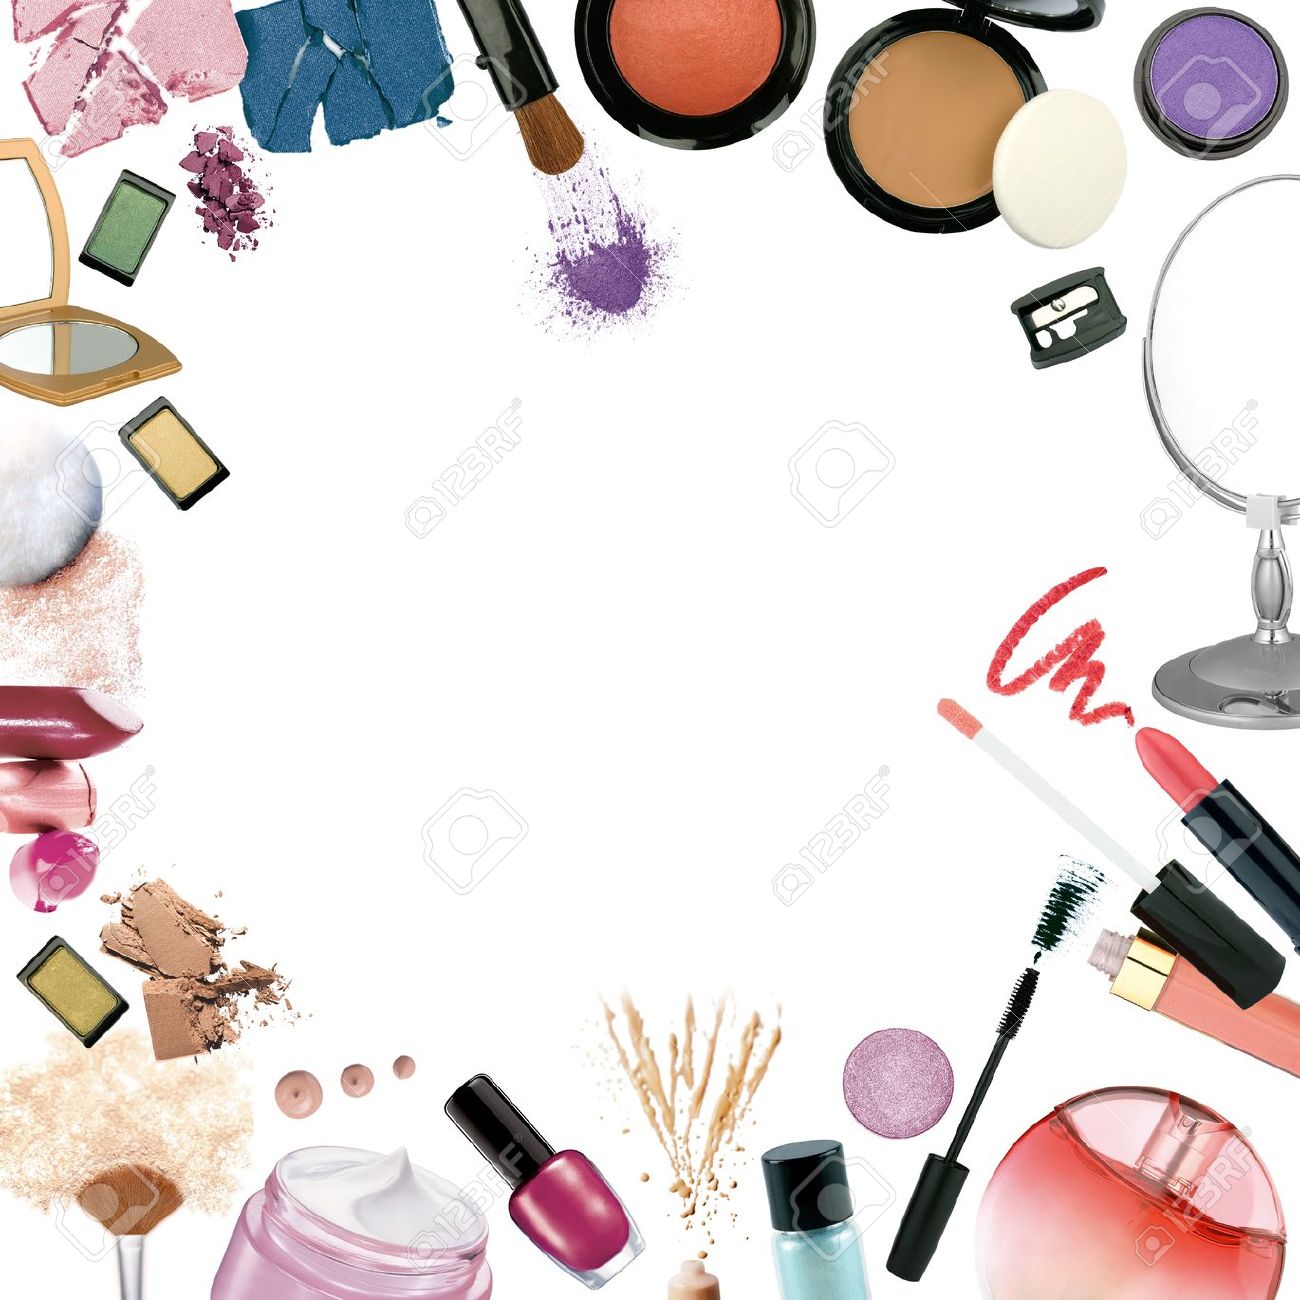 maquillaje fondos de pantalla tumblr,productos cosméticos,belleza,ilustración,sombra,stock photography